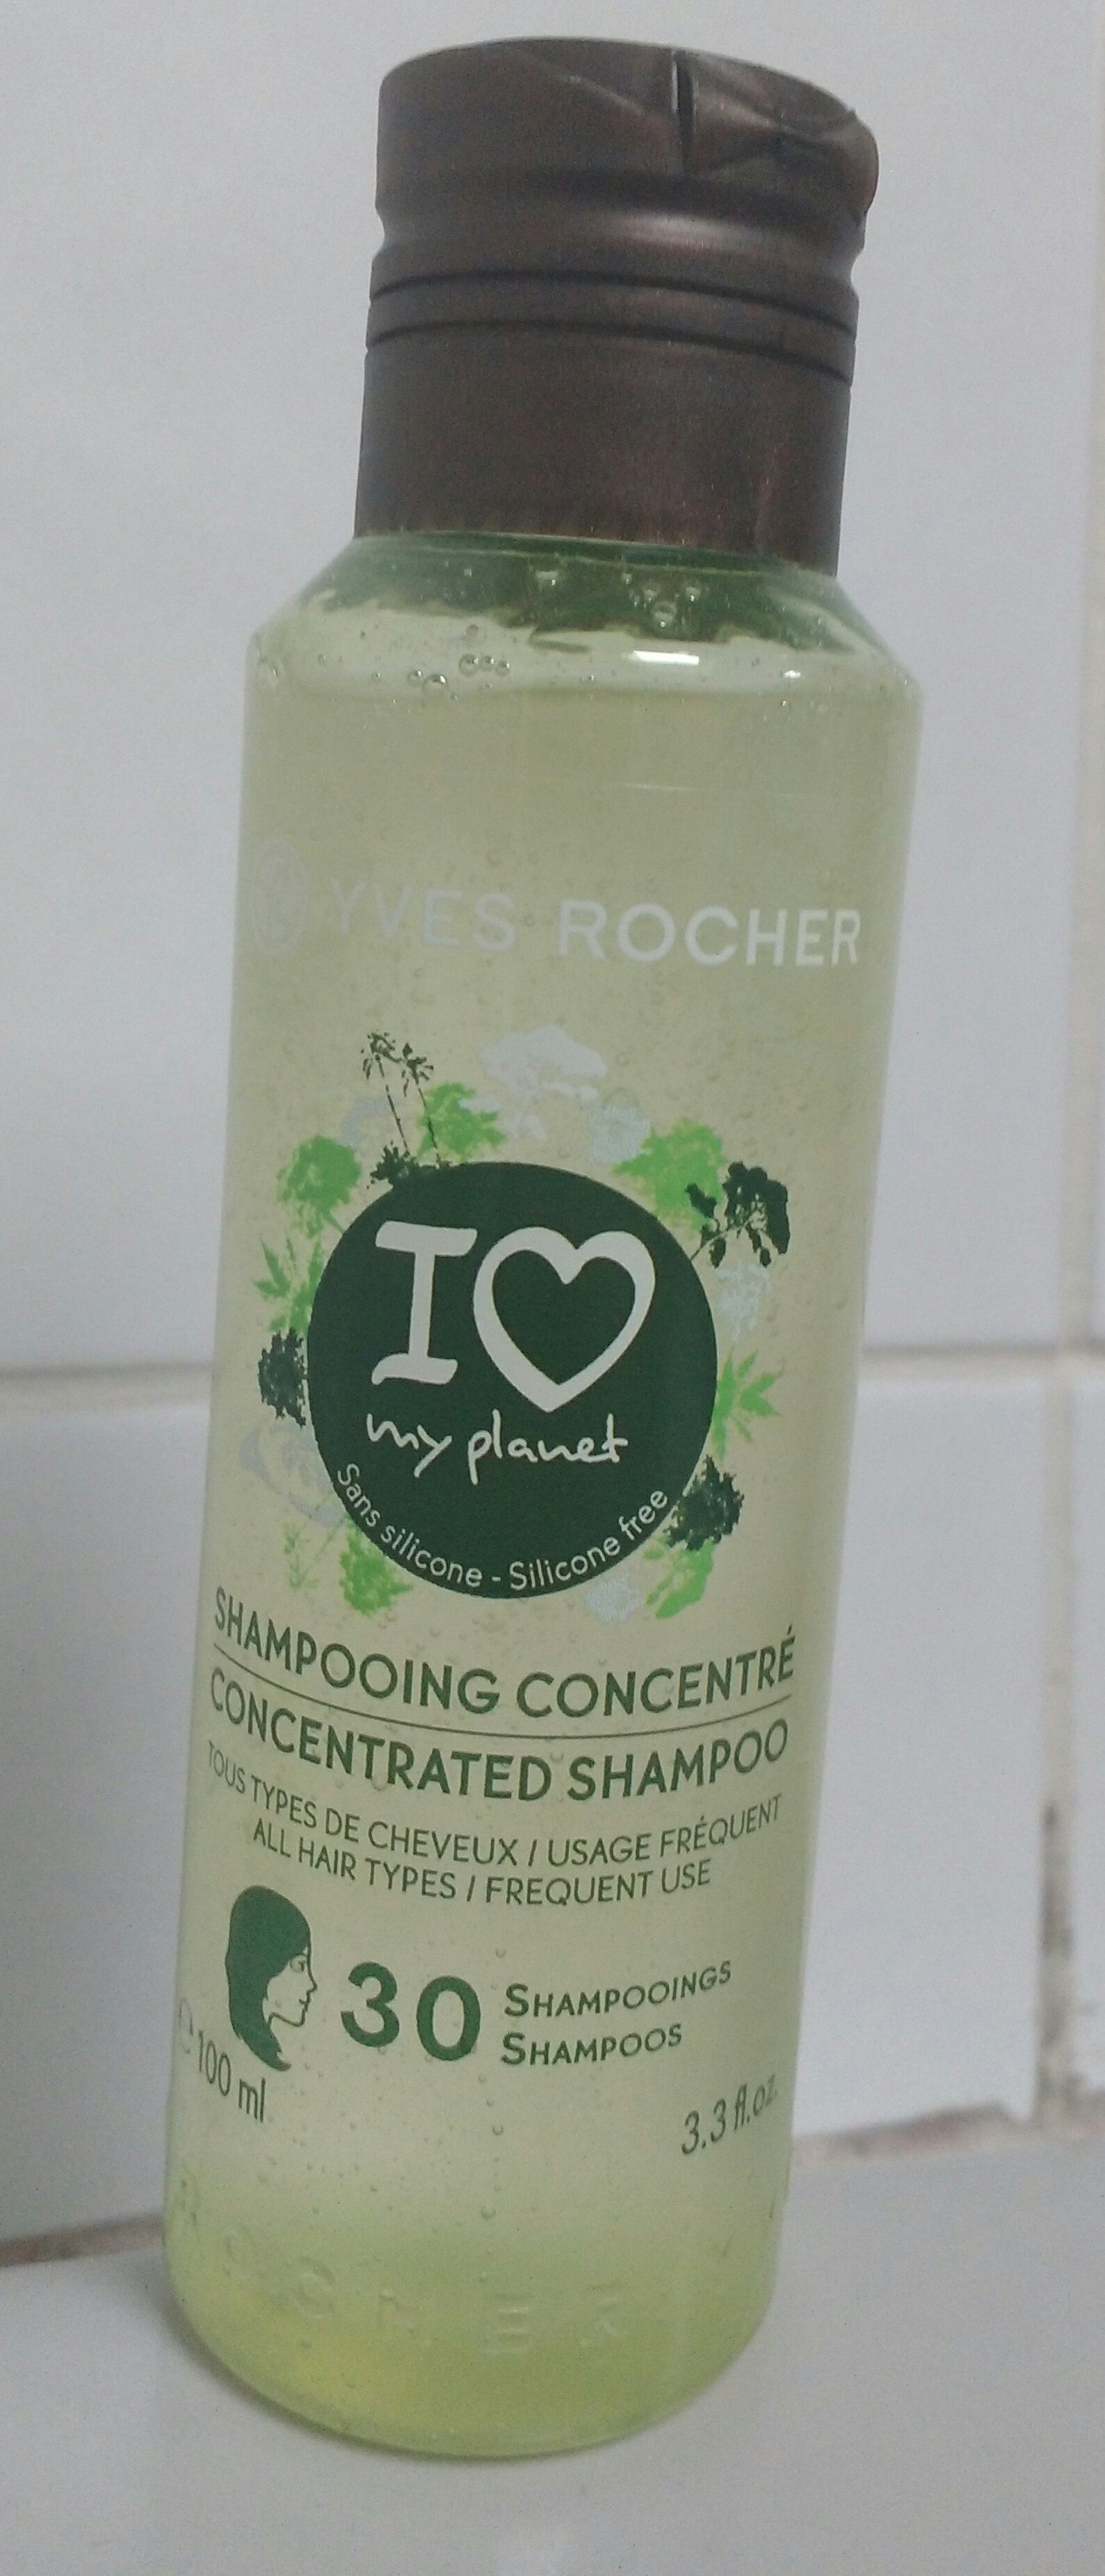 Shampooing concentré - Tous types de cheveux - Produto - fr